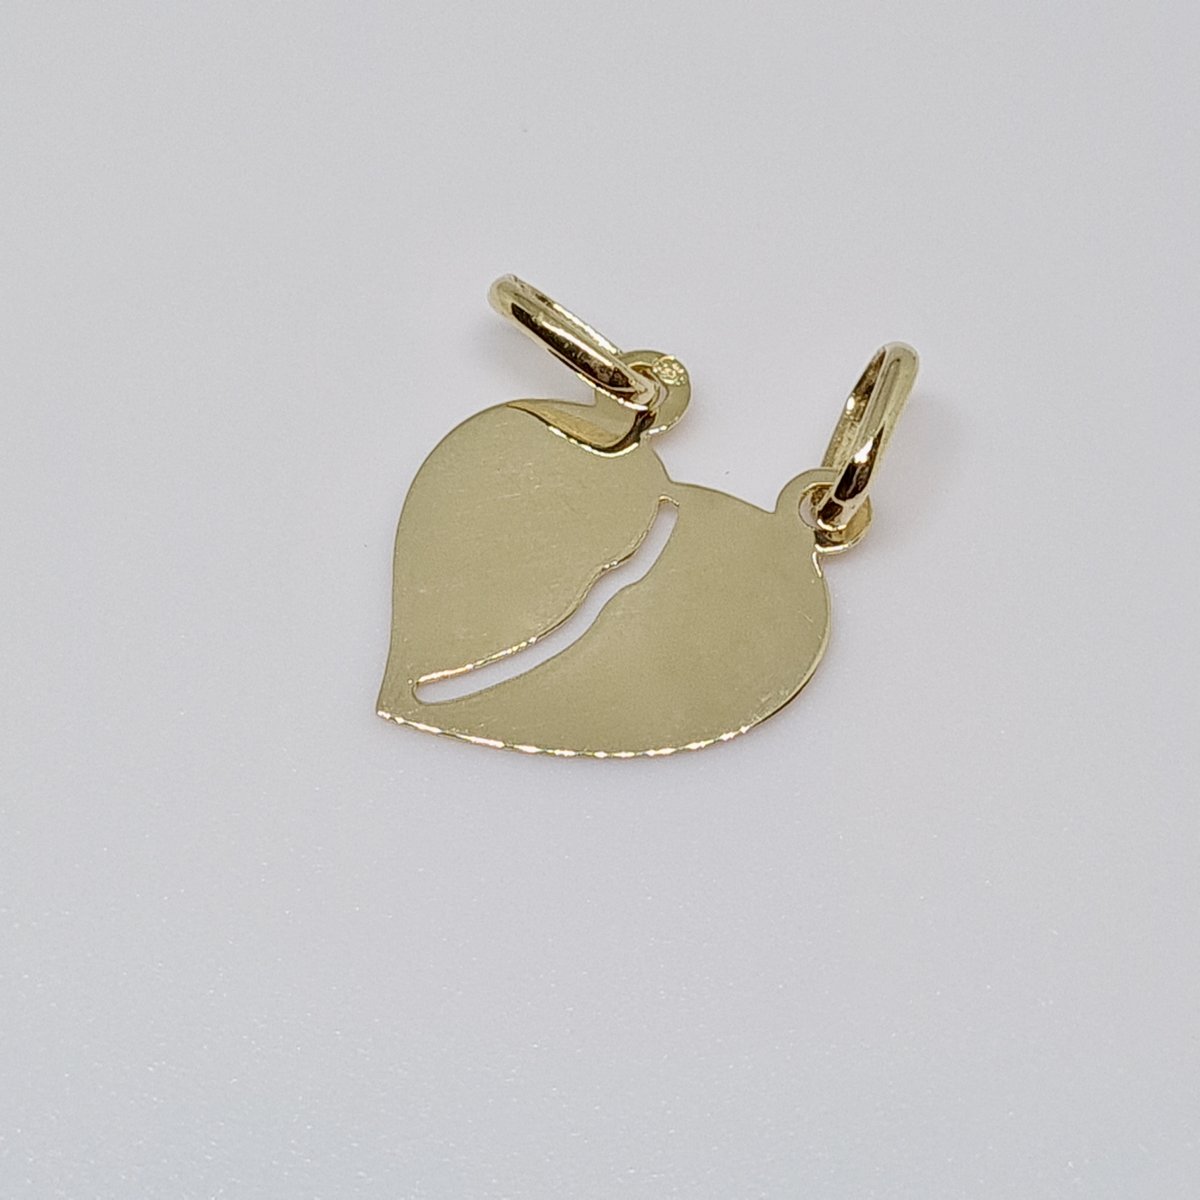 Toi & Moi Heart Pendant In 18k Yellow Gold 750/1000 0.84 Gram ...